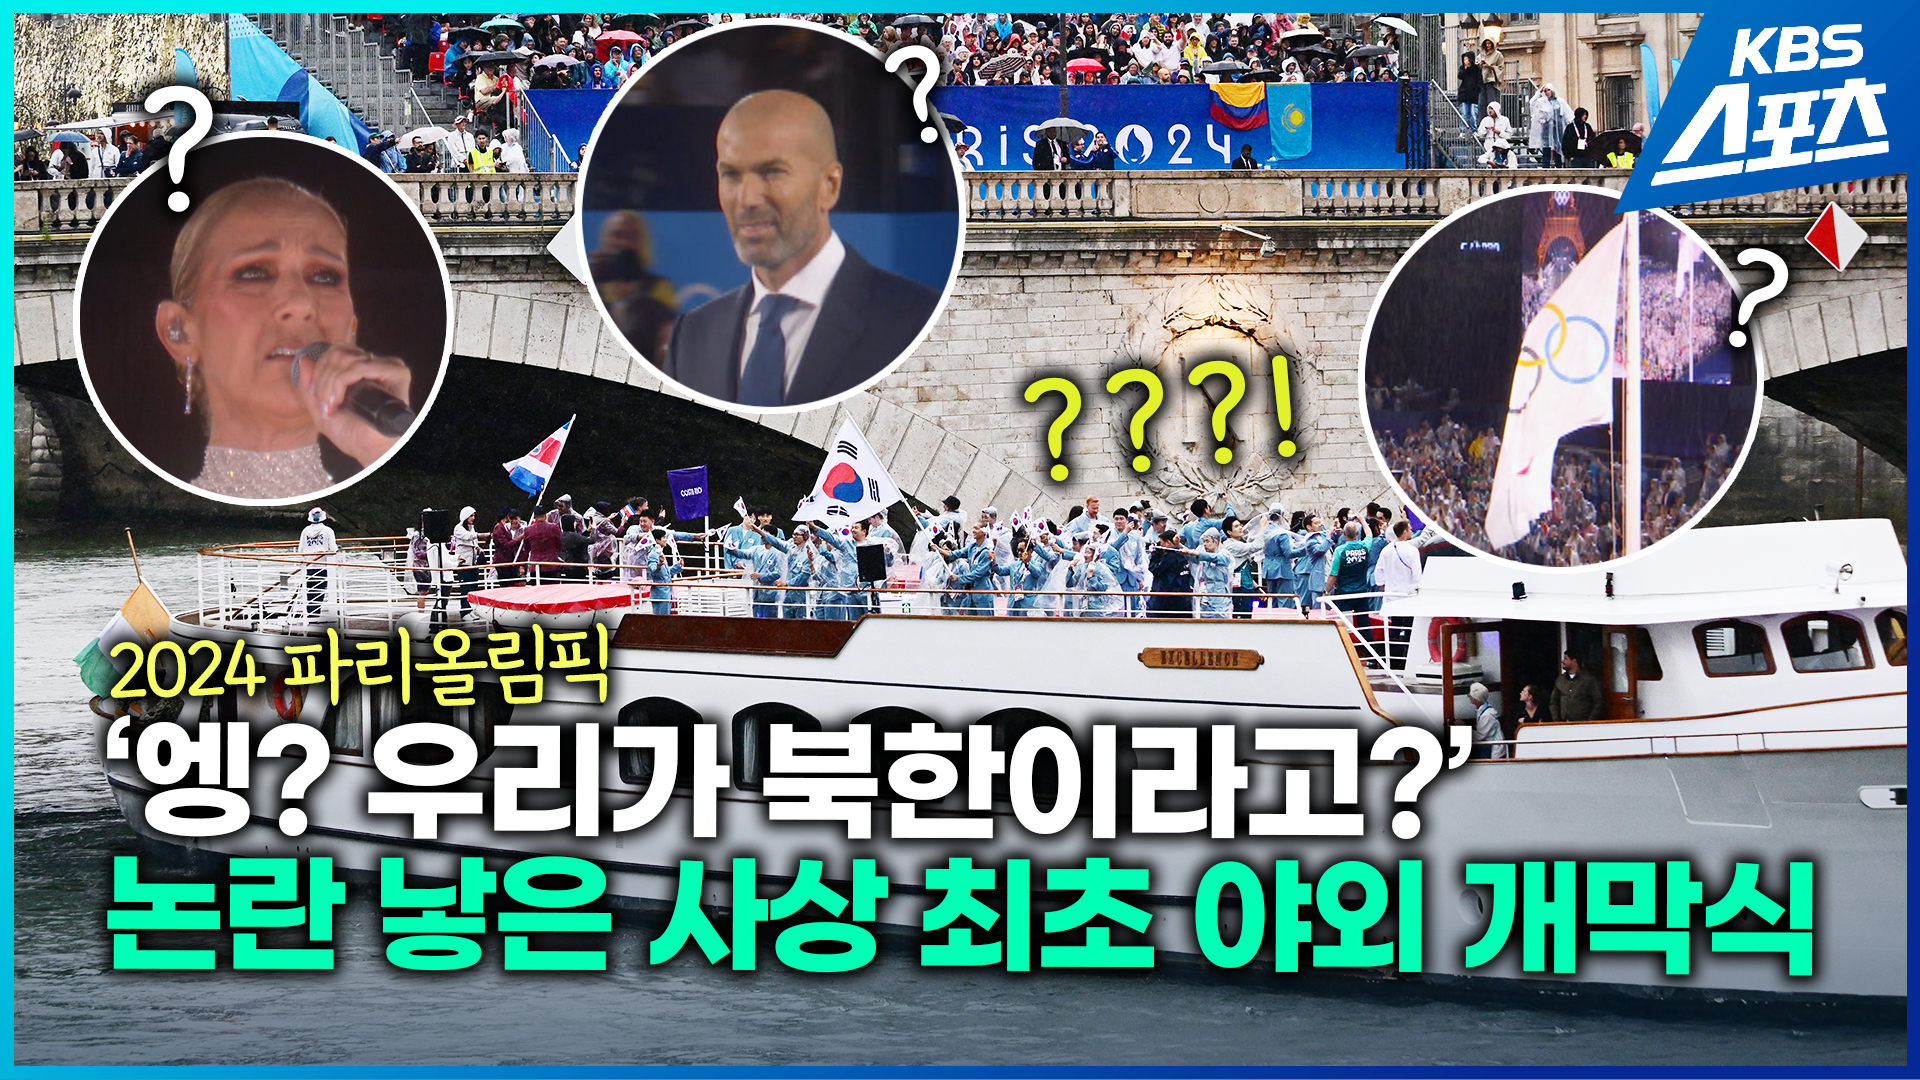 [영상] 개막식서 사라진 대한민국 선수단?…‘북한으로 소개’ 논란의 개막식 현장은?